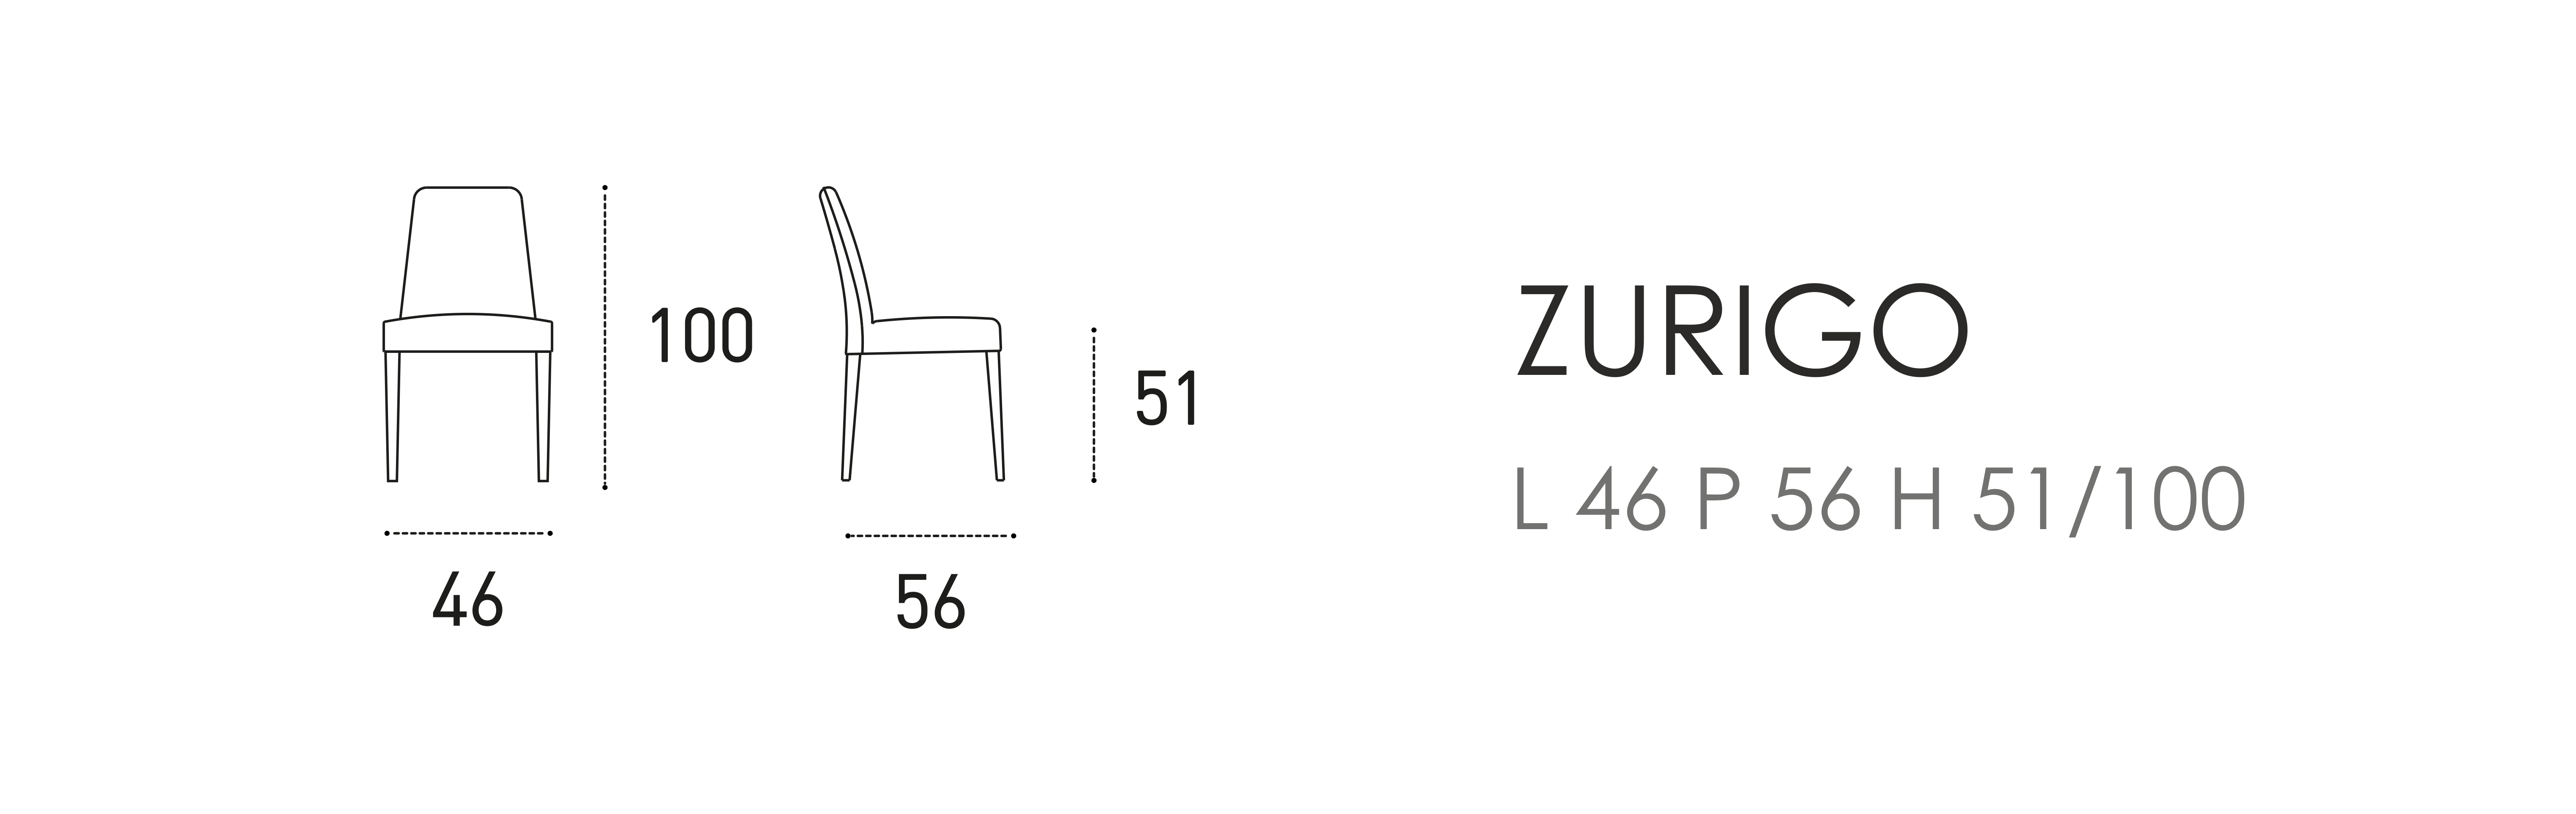 Zurigo L 46 P 56 H 51/100